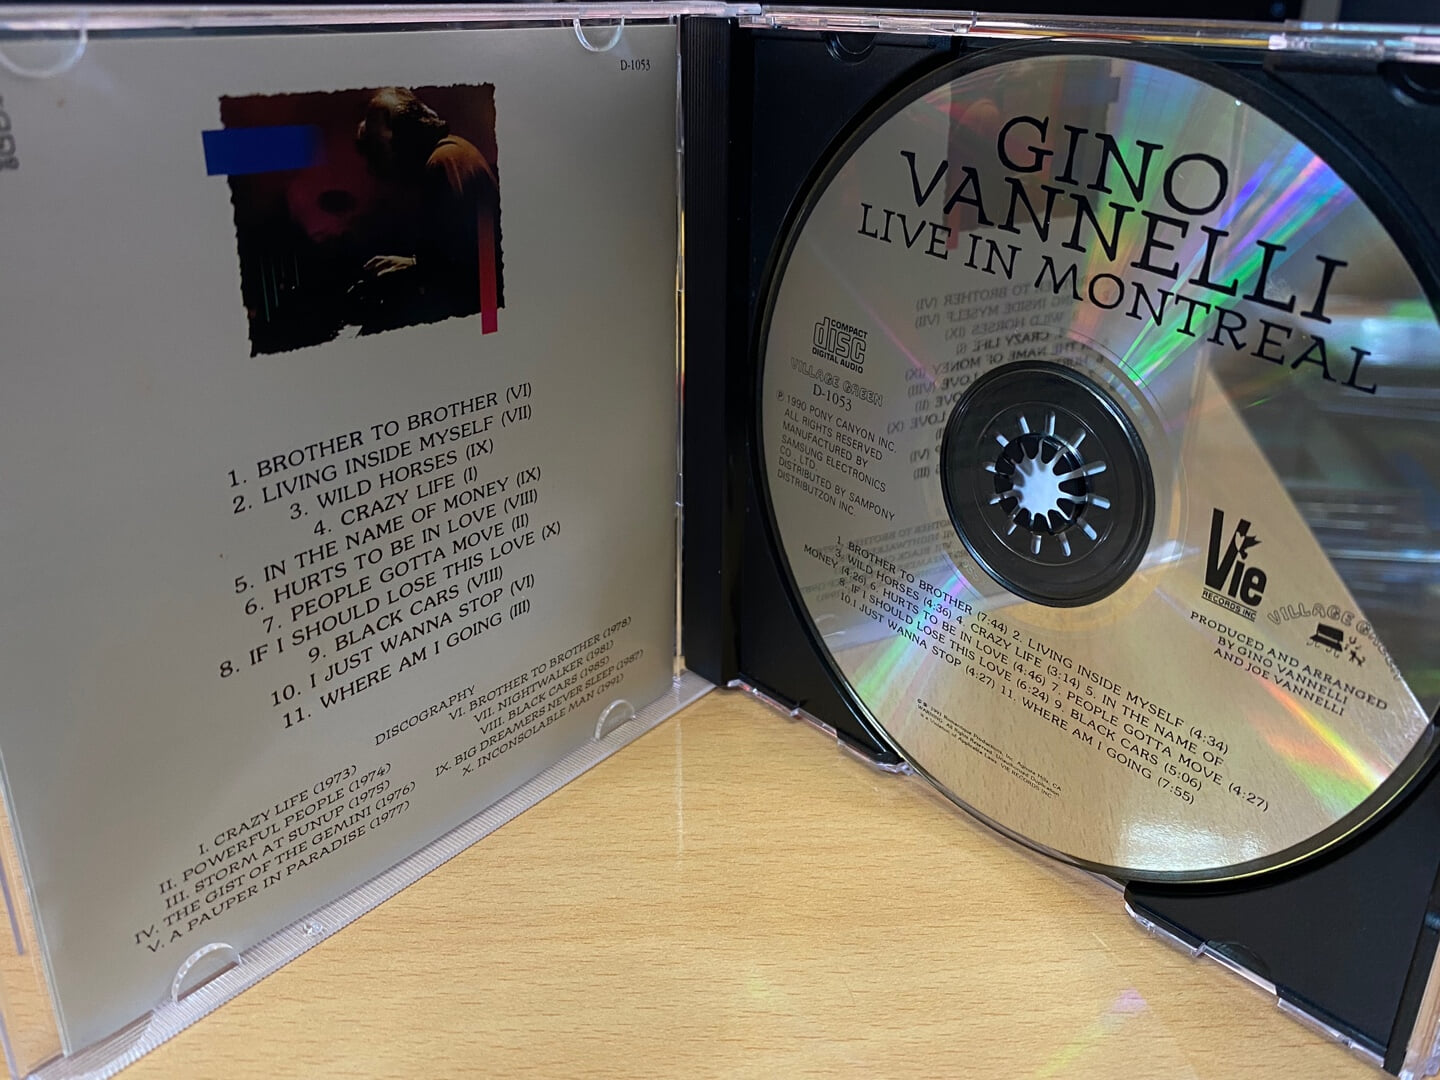 지노 바넬리 - Gino Vannelli - Live In Montreal